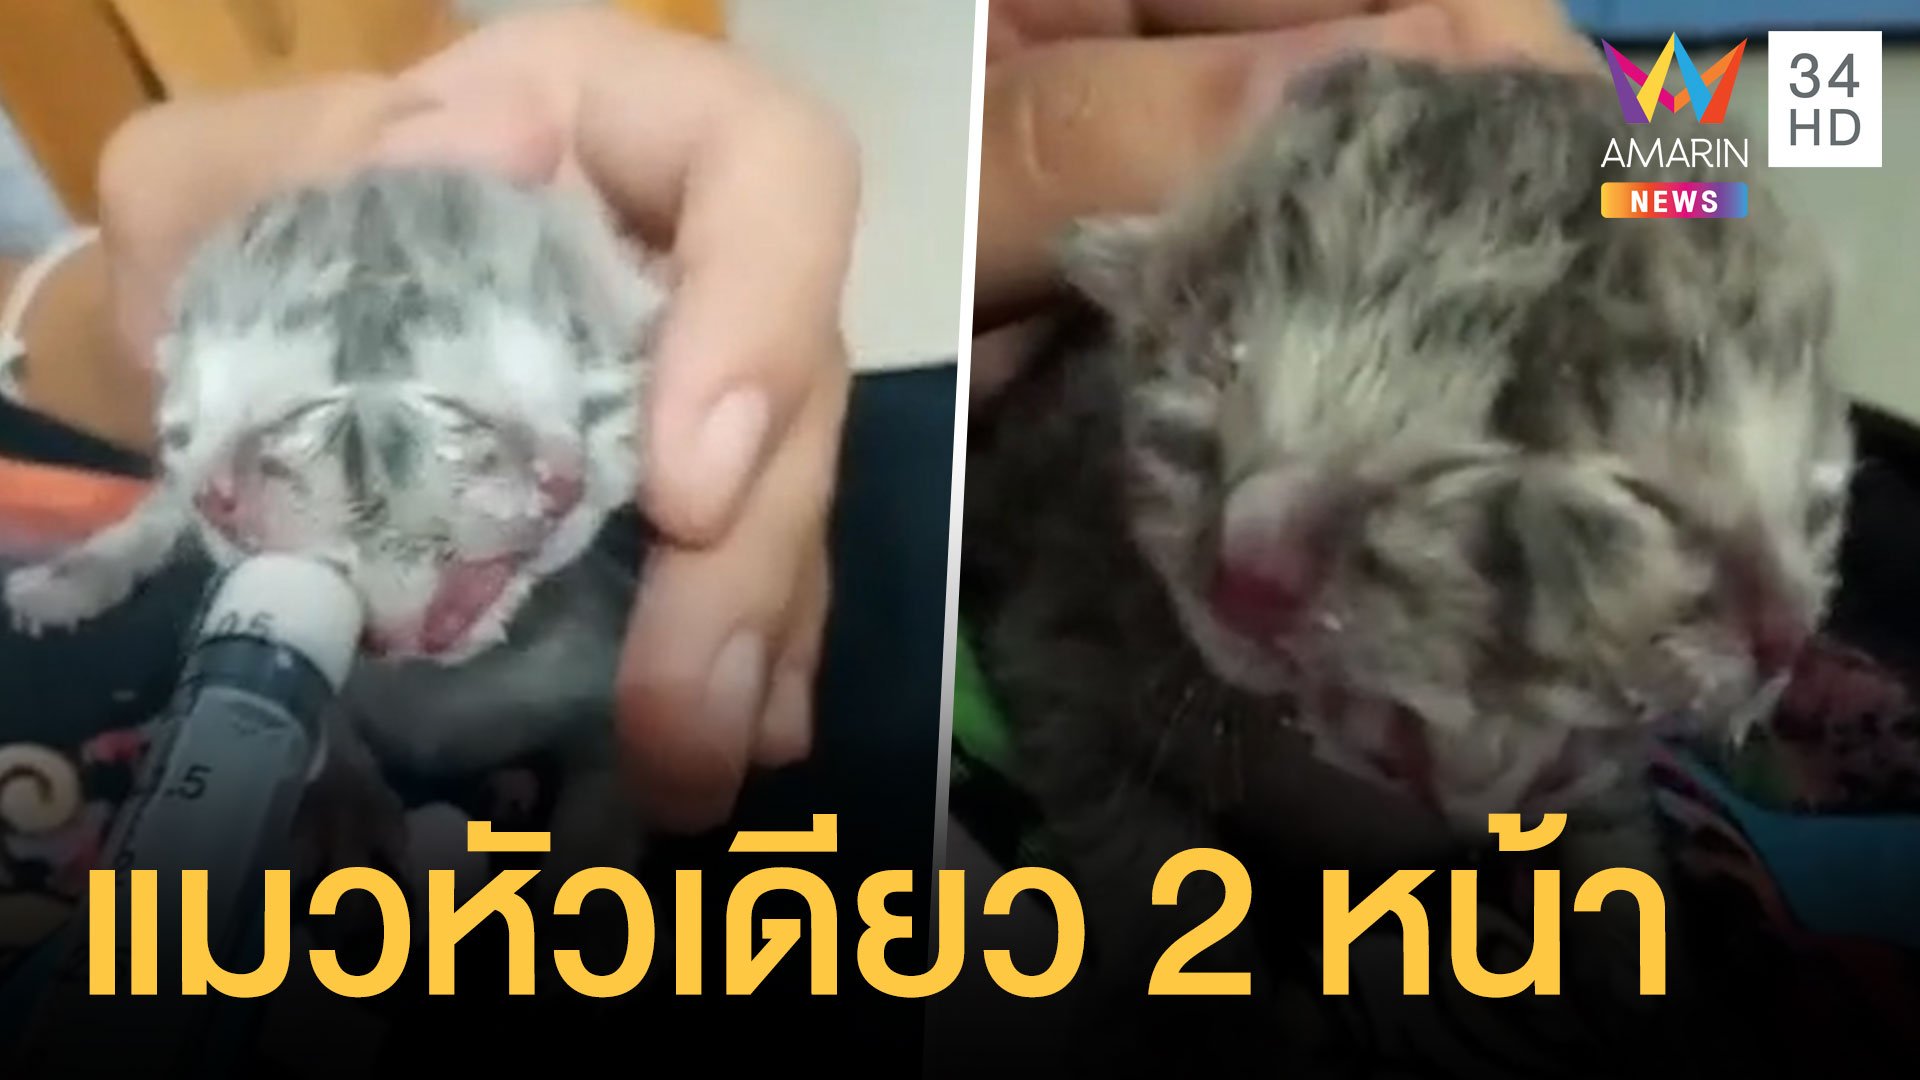 น้องแมวเกิดมามีหัวเดียว แต่มีสองหน้า | ข่าวอรุณอมรินทร์ | 29 ส.ค. 64 | AMARIN TVHD34